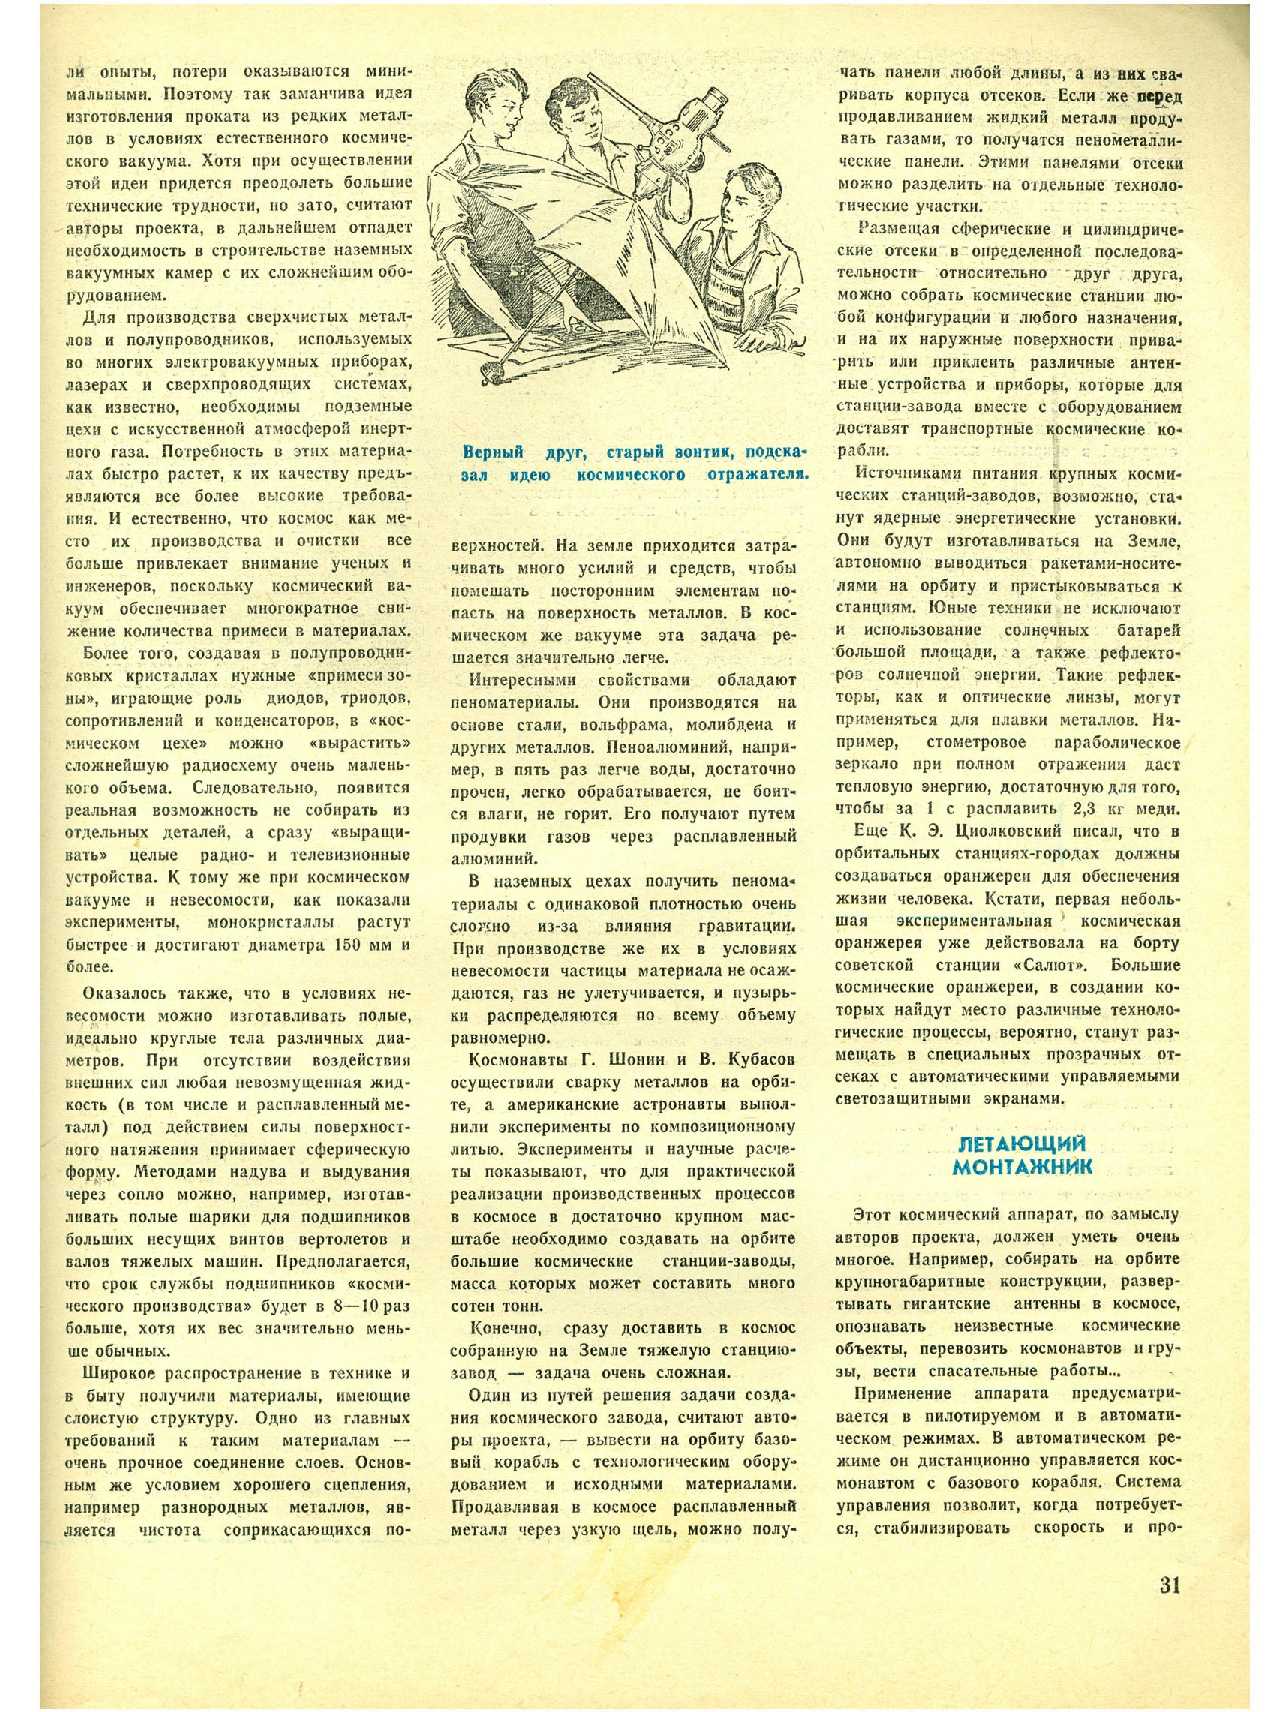 МК 9, 1978, 31 c.